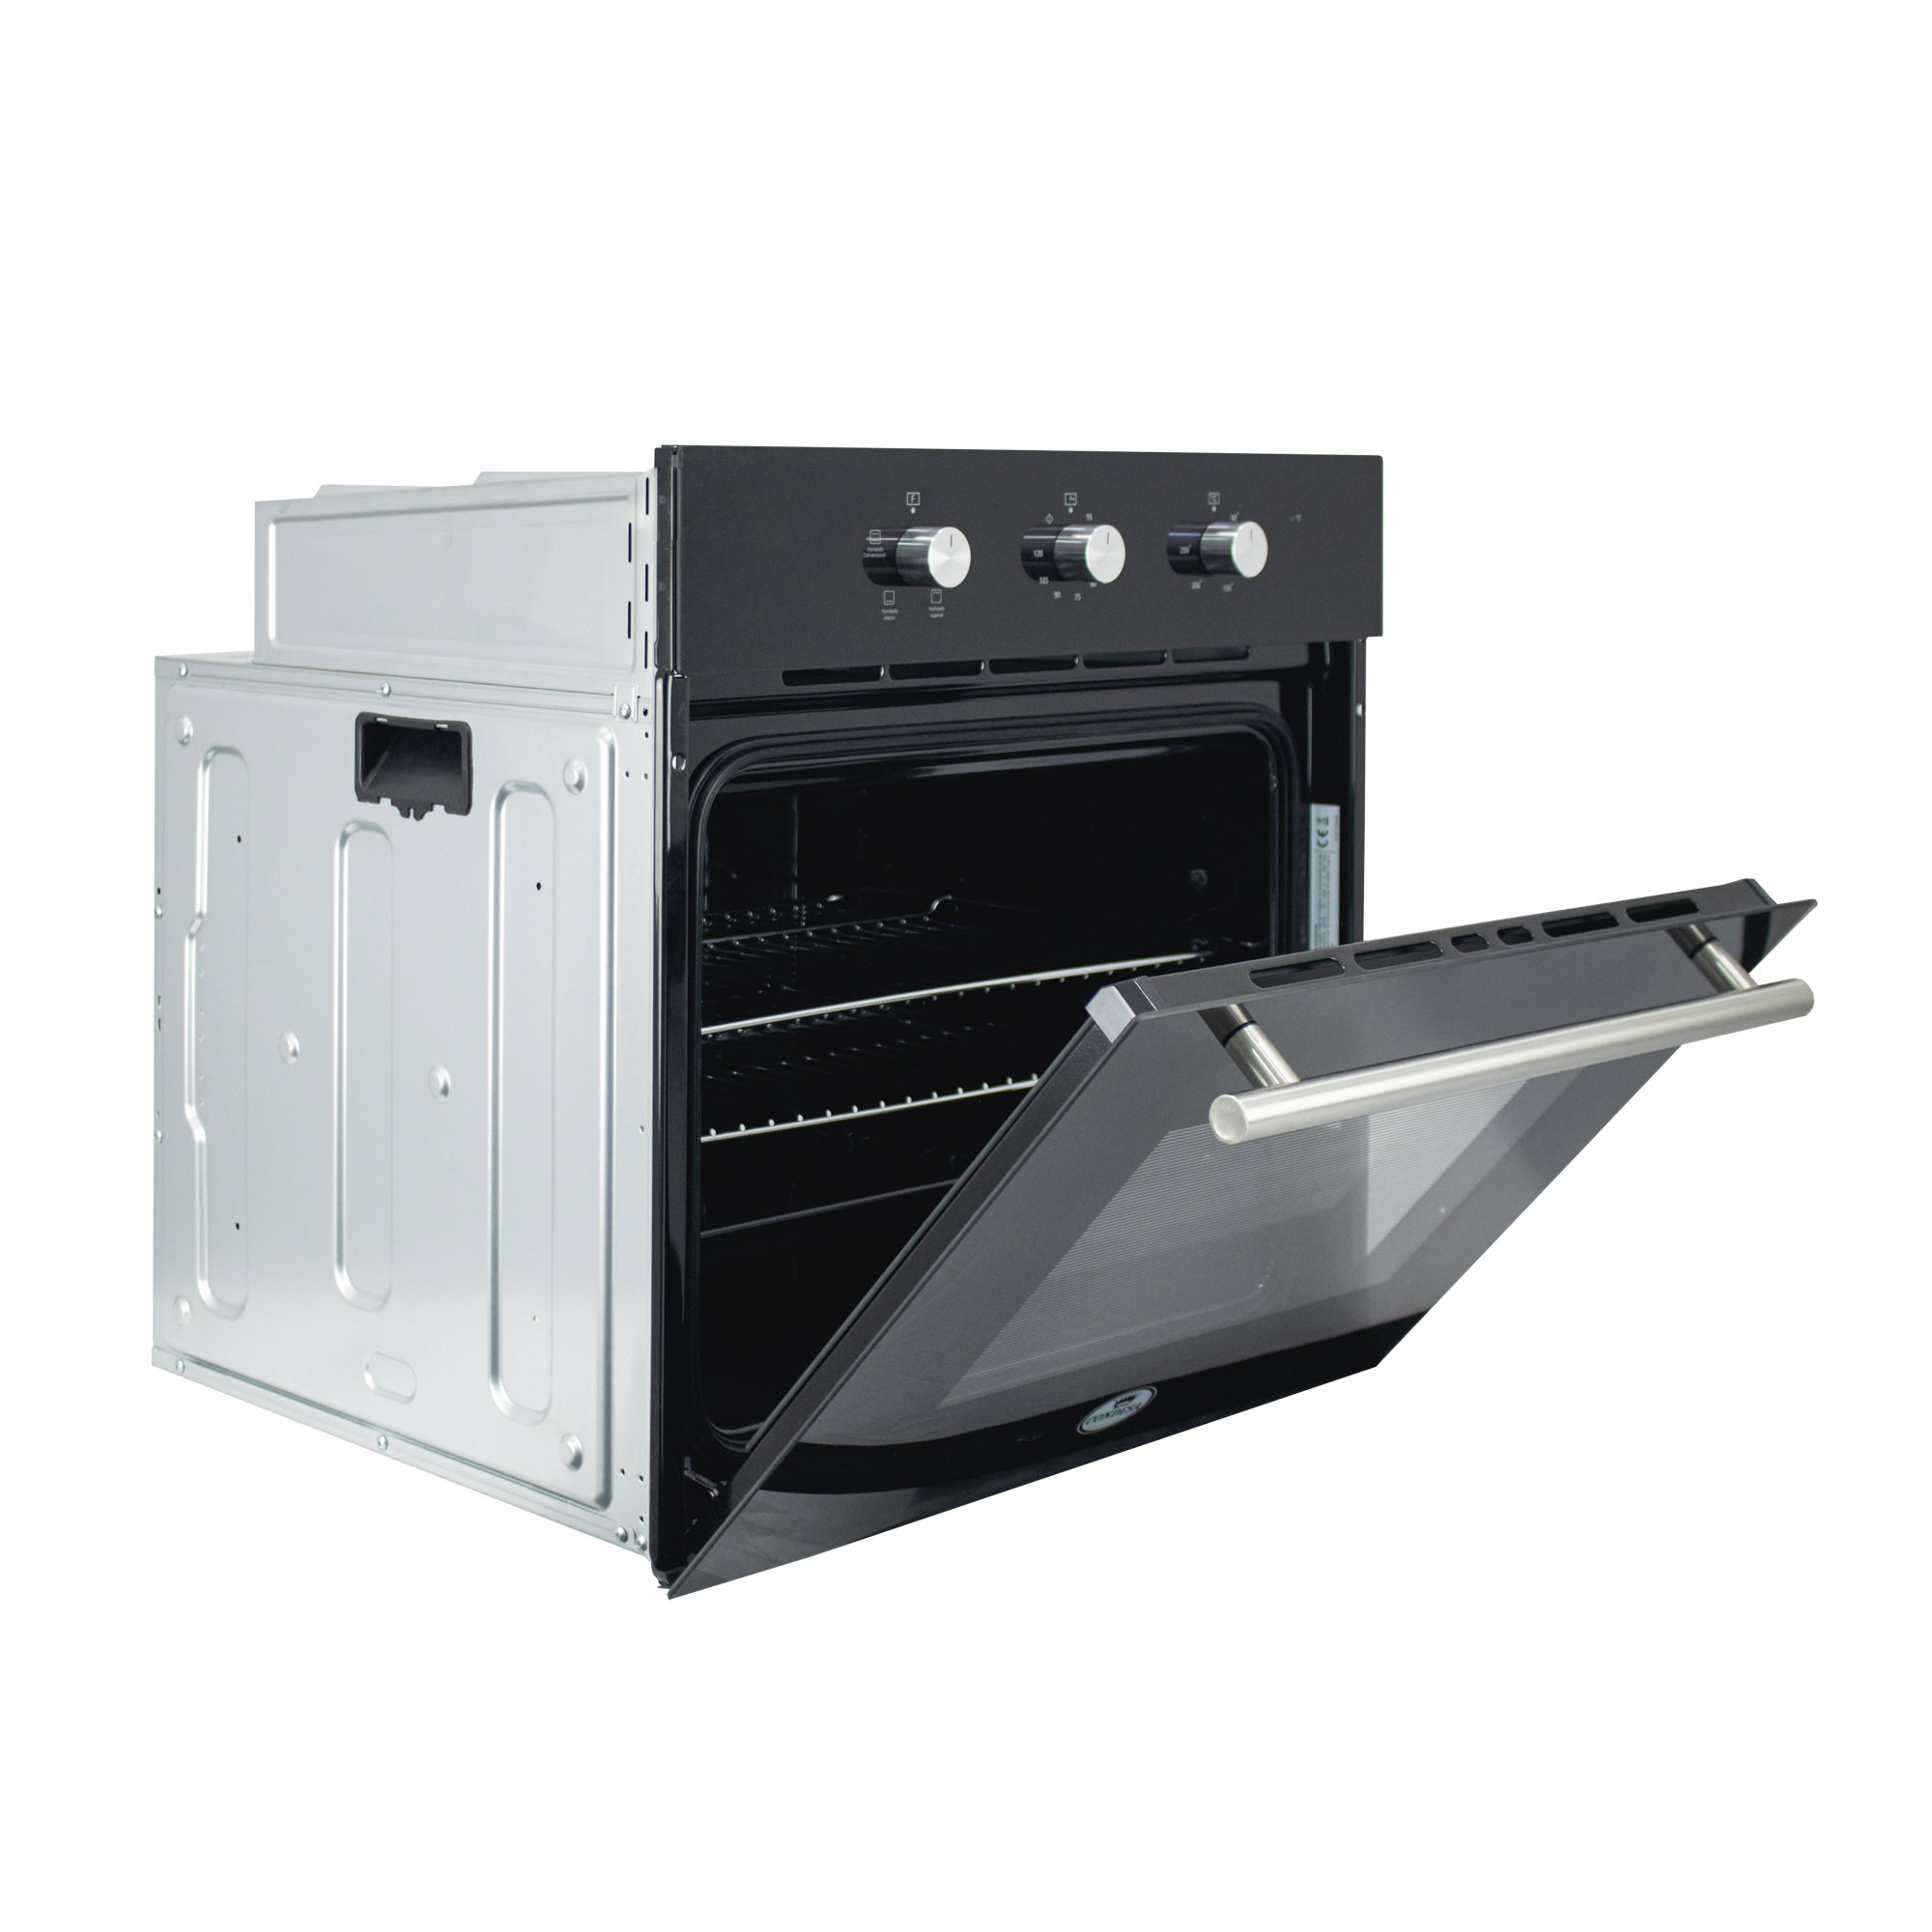 Multimax - Complementa tu cocina con el horno microondas Selectron de 700W  de potencia y haz más en tu hogar. Descubre las OFERTAS EXCLUSIVAS WEB que  tenemos para ti hasta el 16